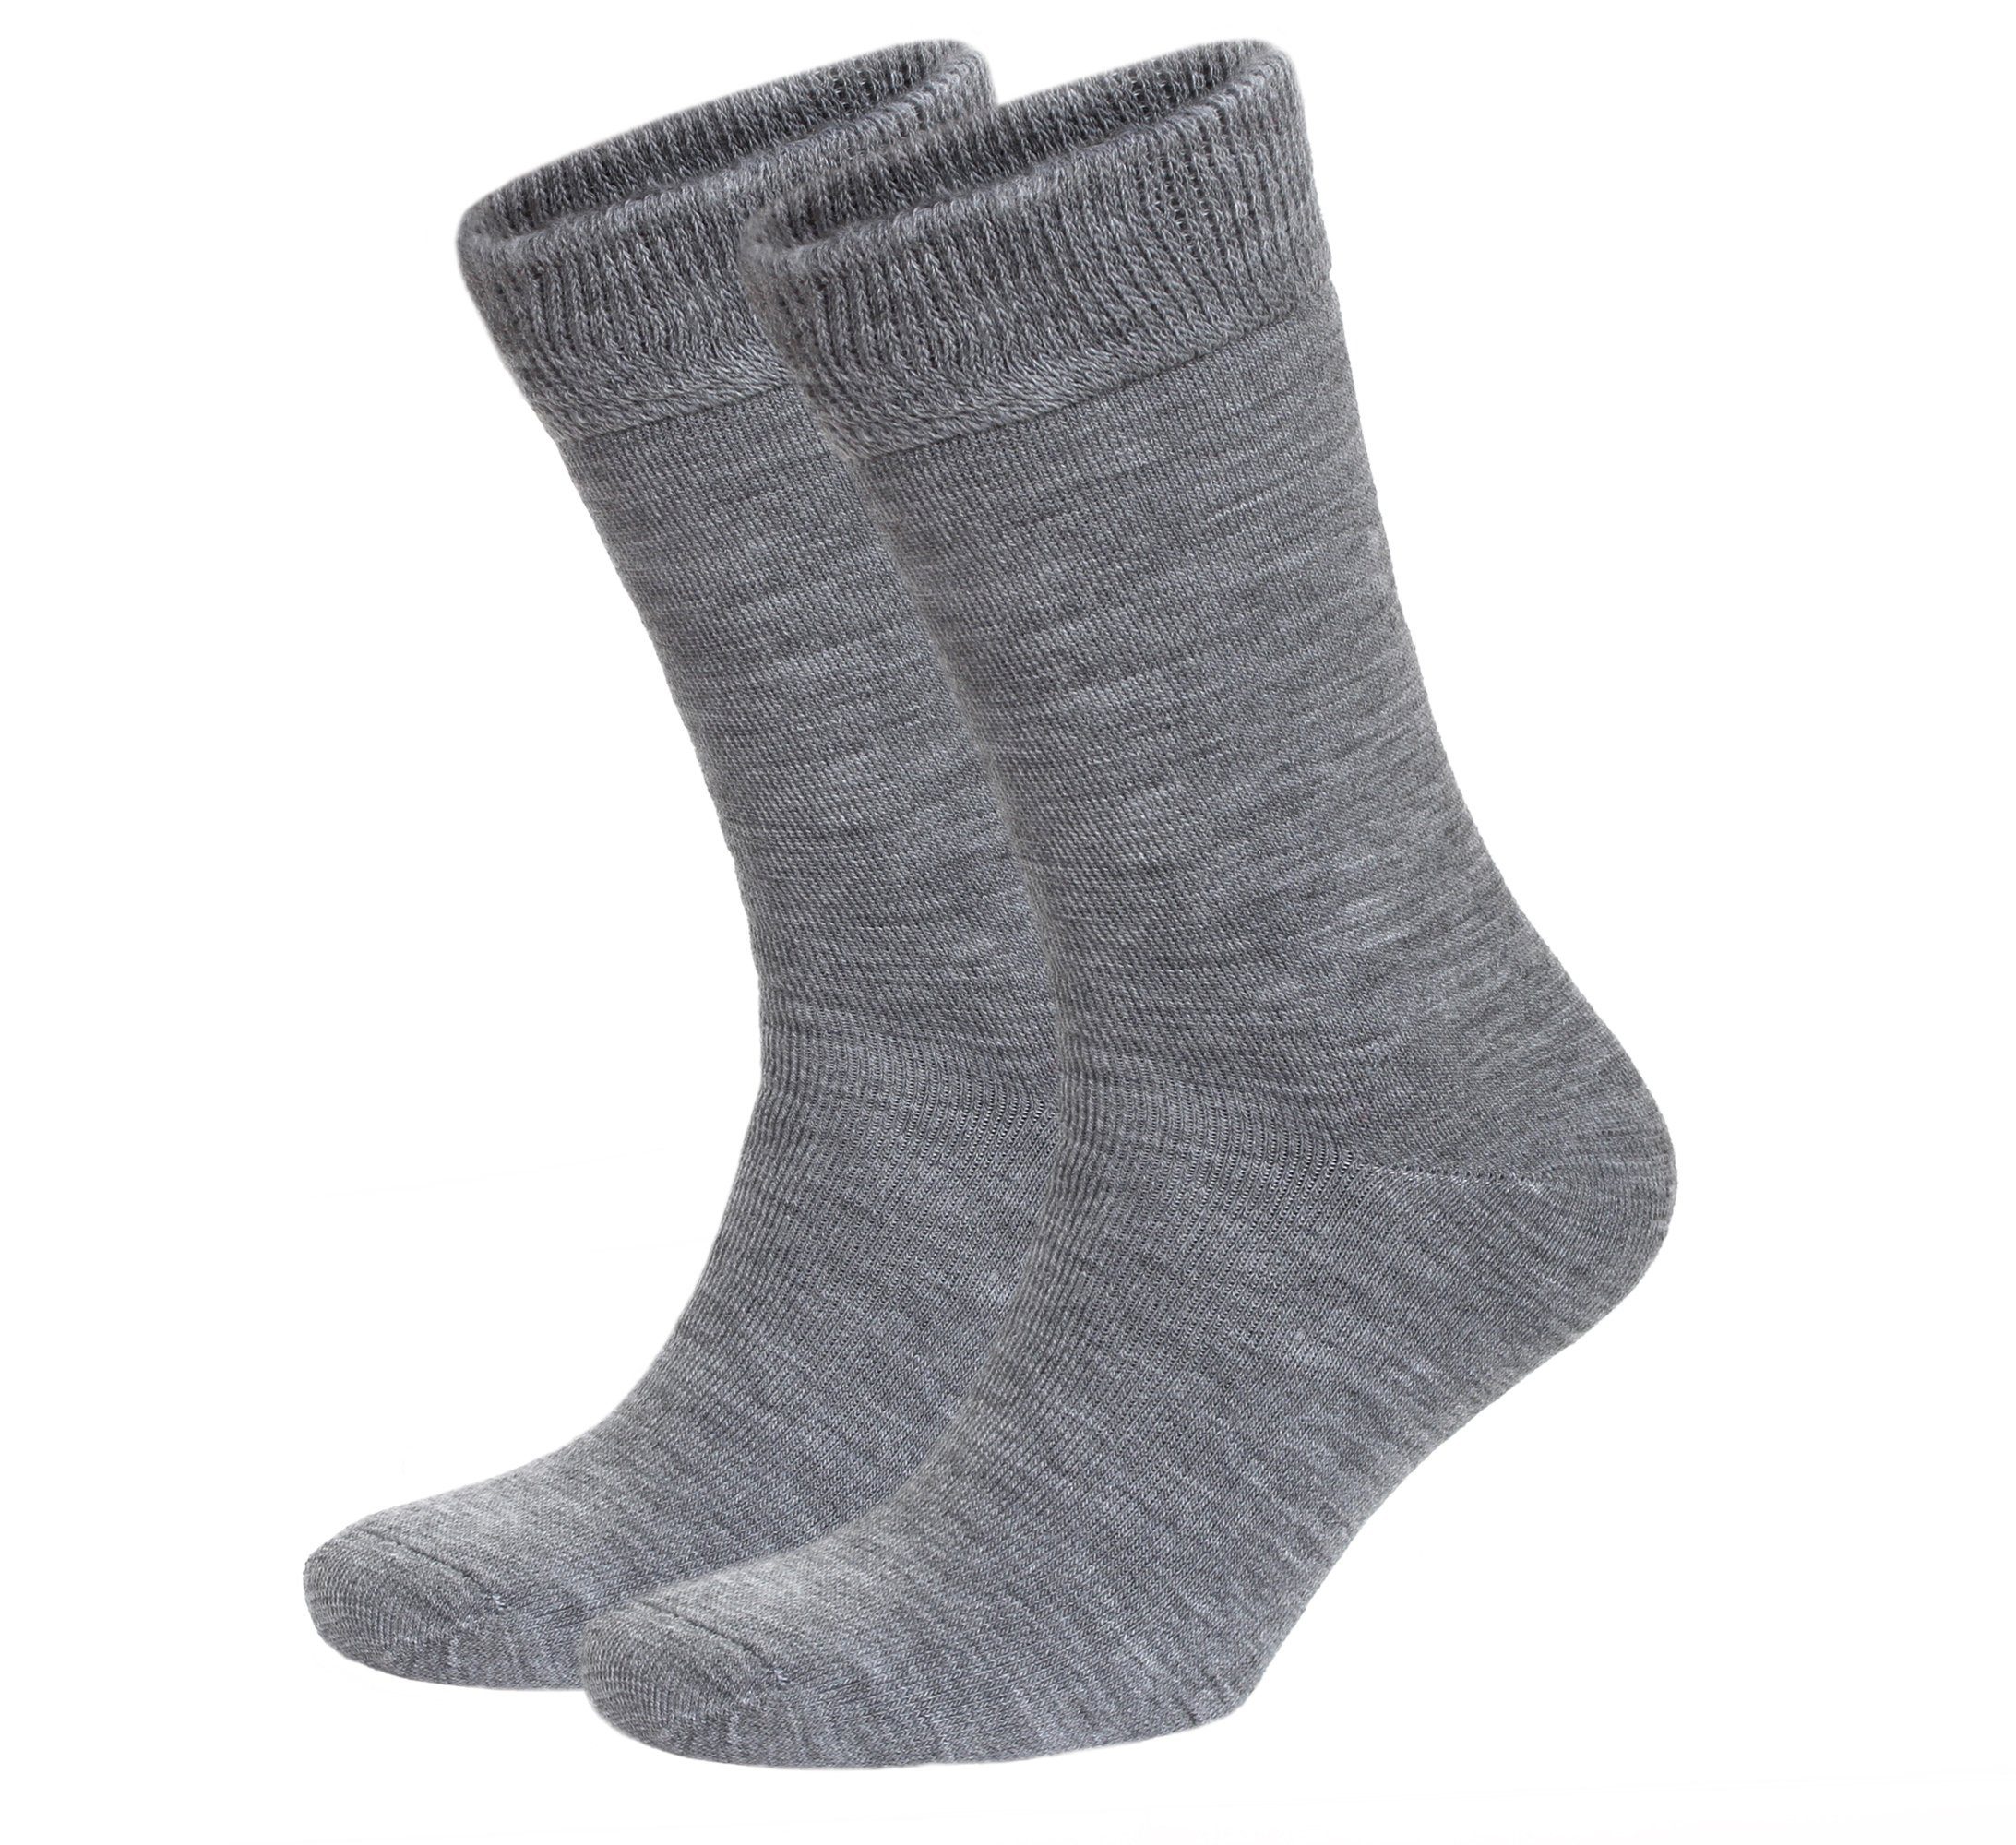 NoblesBox Thermosocken Damen Wintersocken (Beutel, 2-Paar, 37-40 EU Größe) Damen Warme Socken, Damen Arbeitssocken Grau